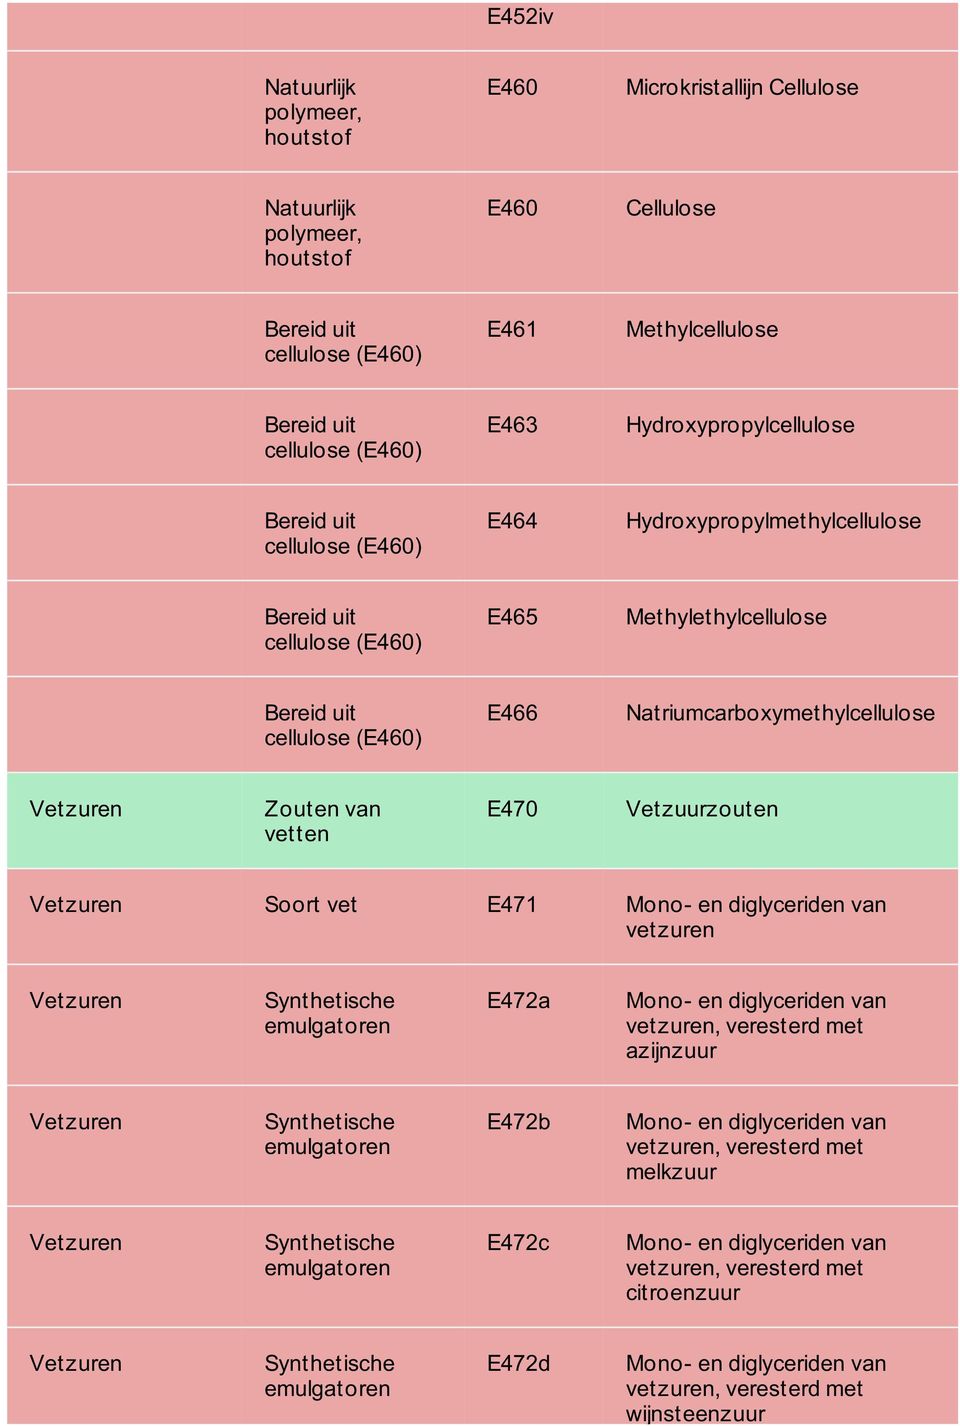 E470 Vetzuurzouten Soort vet E471 Mono- en diglyceriden van vetzuren e emulgatoren E472a Mono- en diglyceriden van vetzuren, veresterd met azijnzuur e emulgatoren E472b Mono- en diglyceriden van